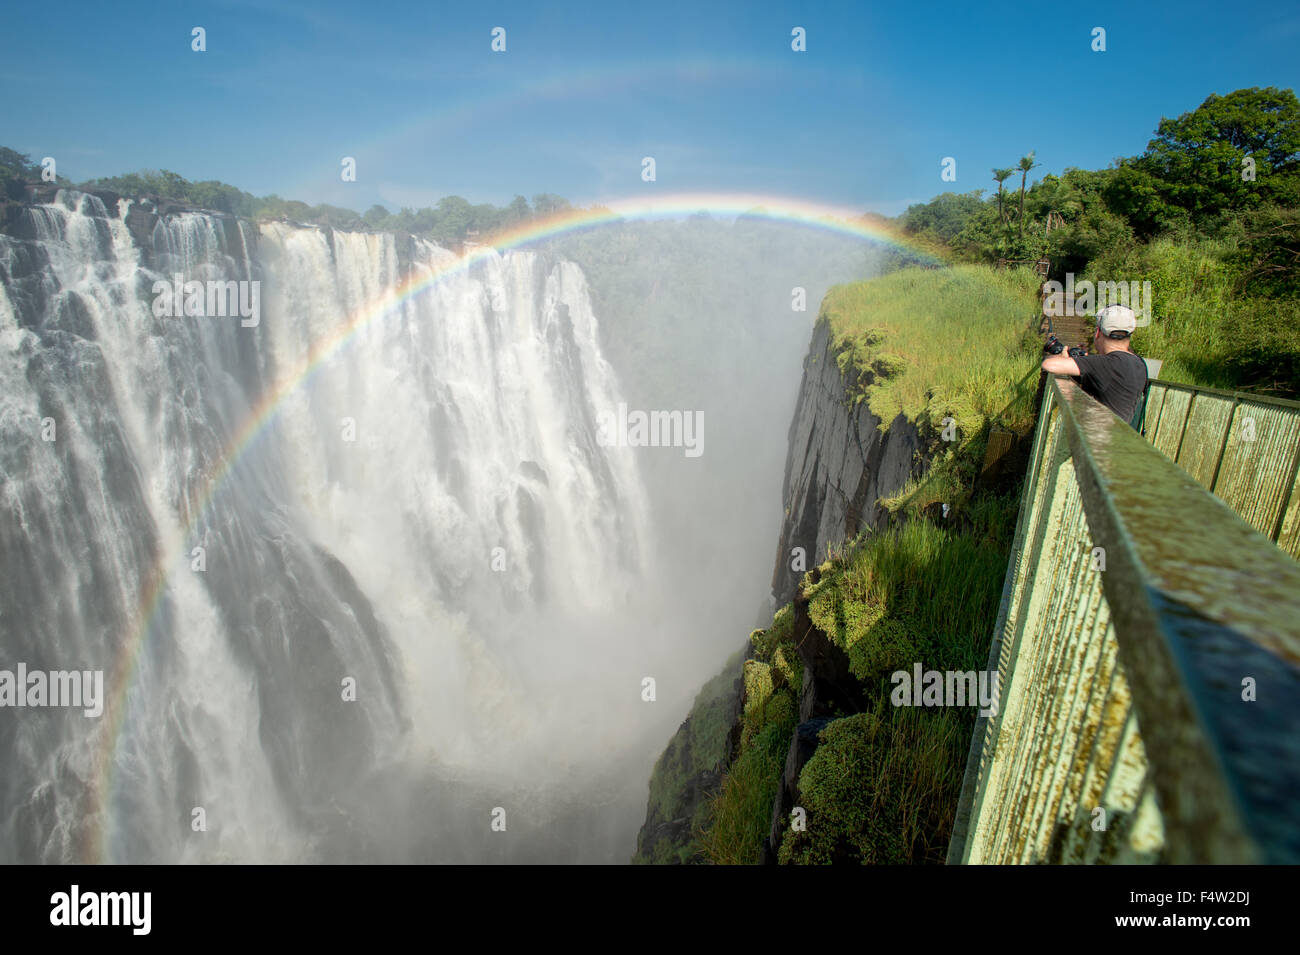 LIVINGSTONE, ZAMBIA - Turista con la cámara a través de las Cataratas Victoria cascada con rainbow Foto de stock